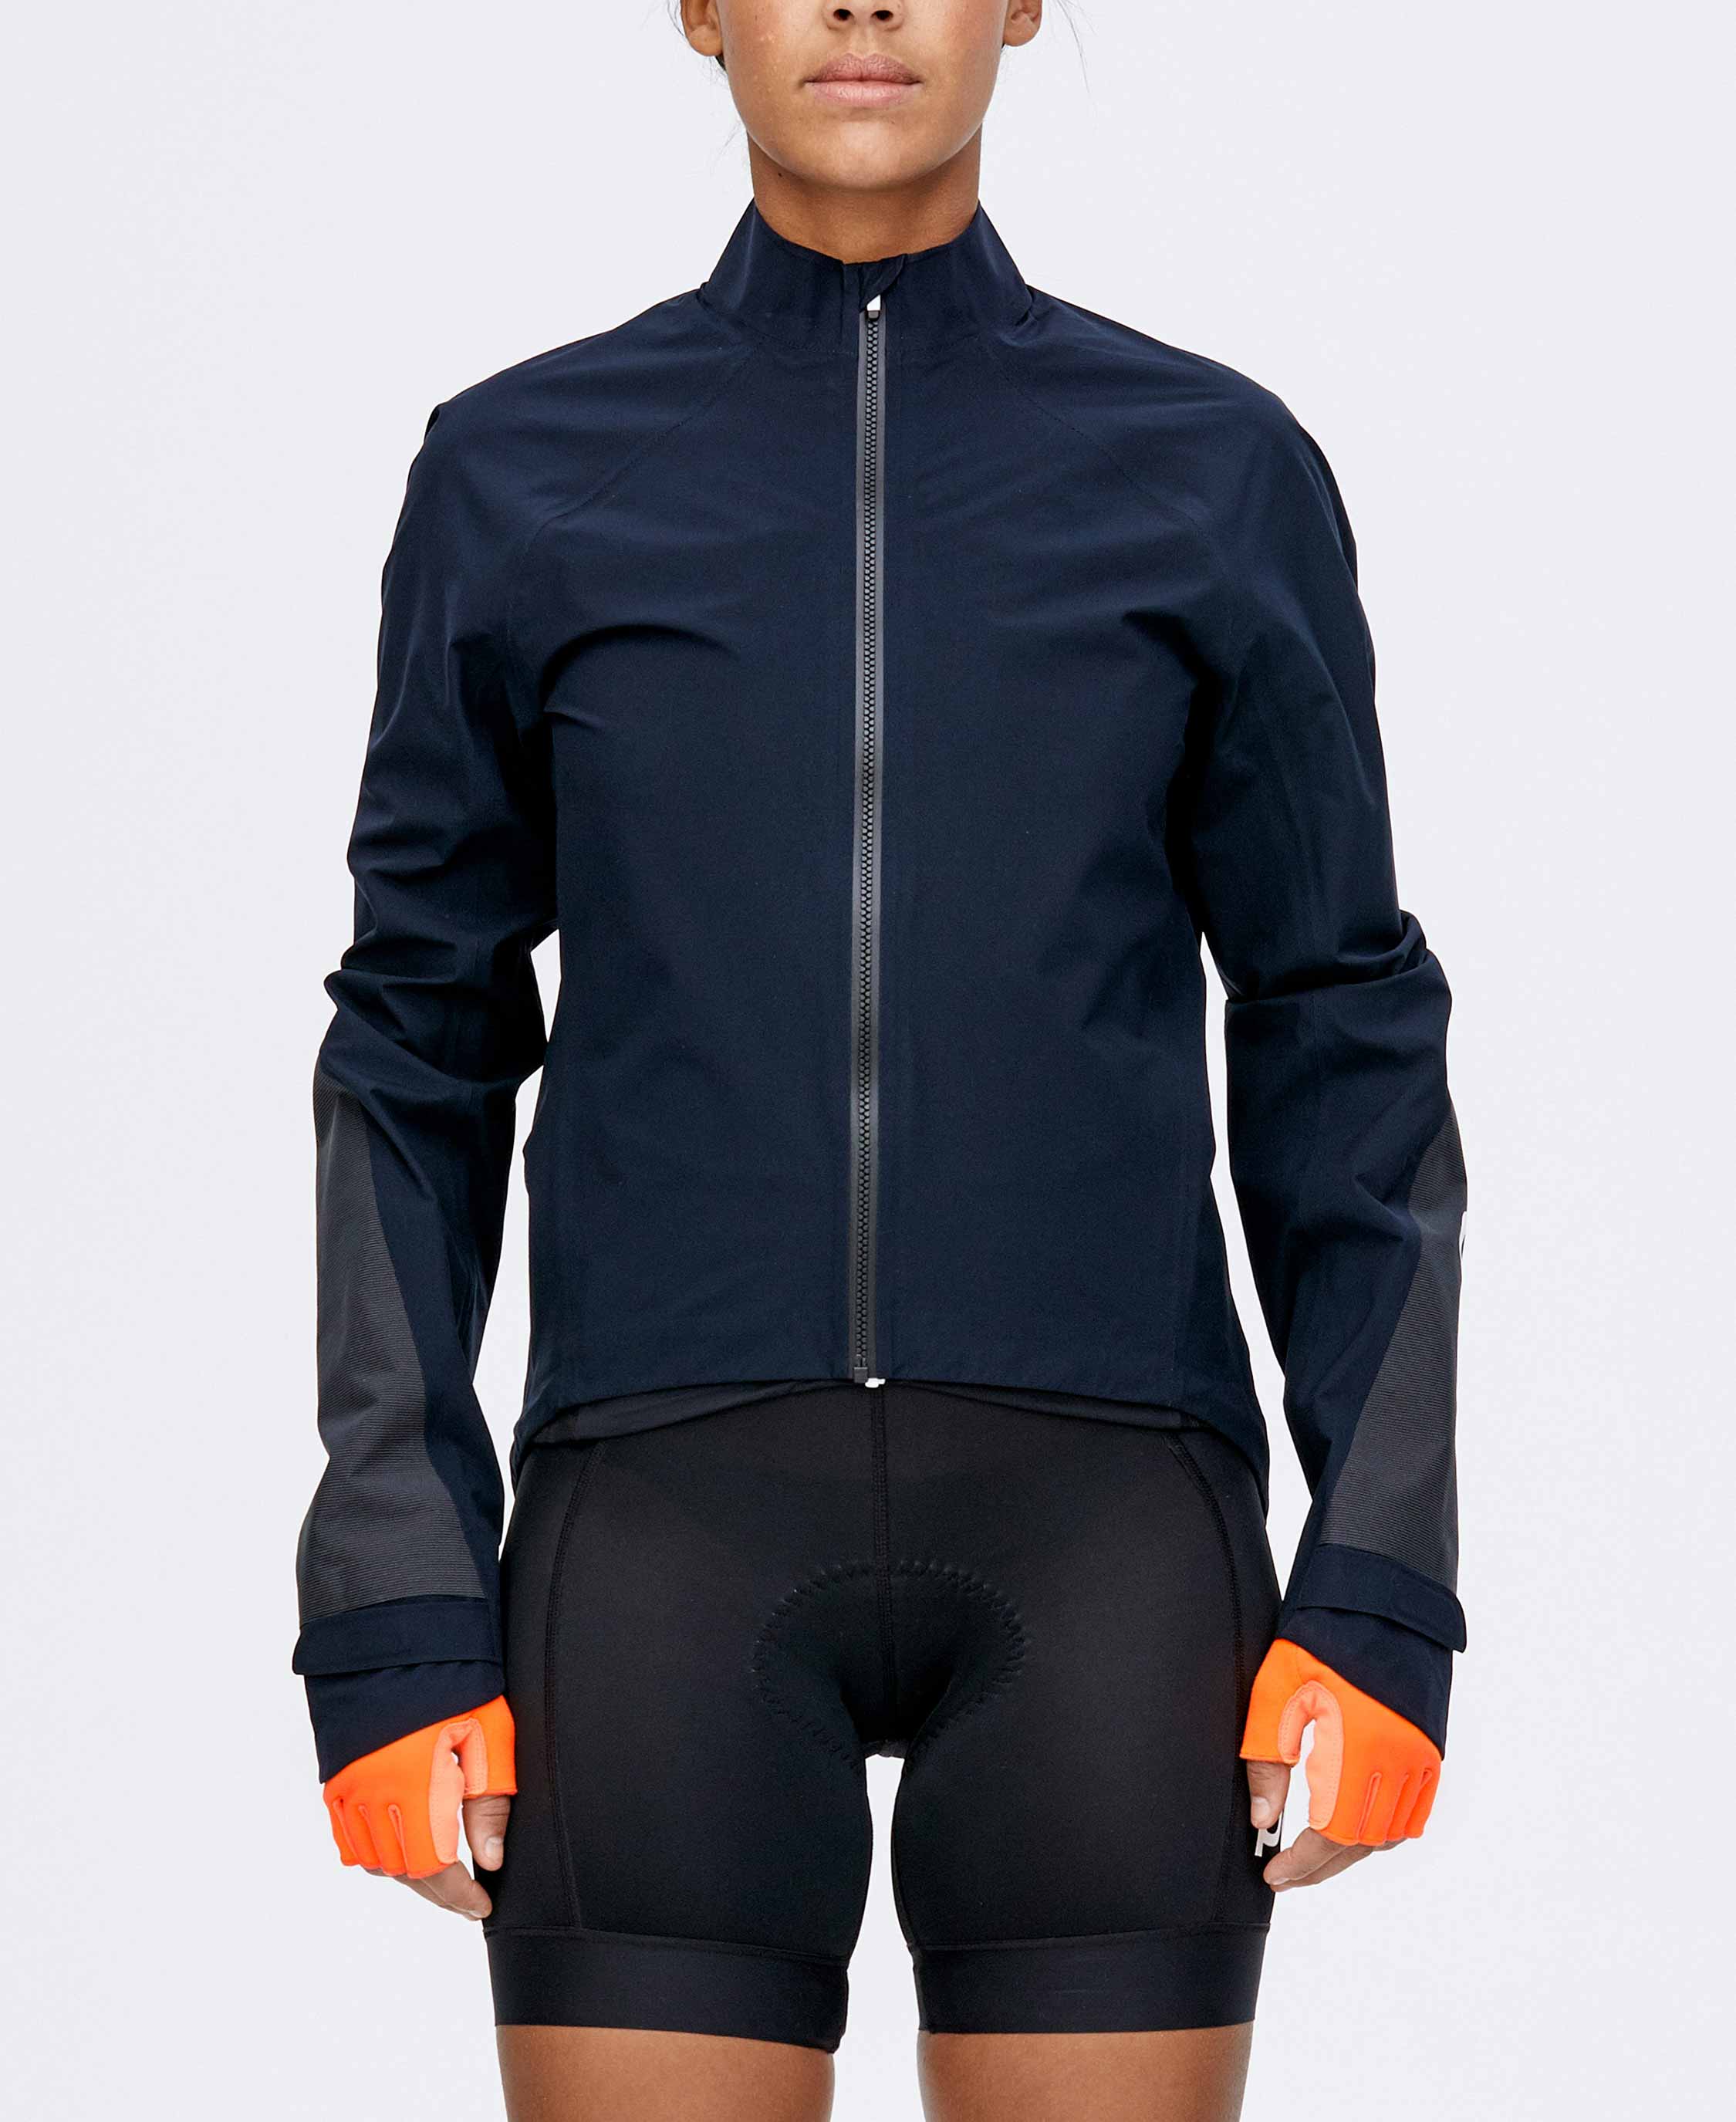 Poc AVIP Rain Jacket - Cycling jacket - Men's